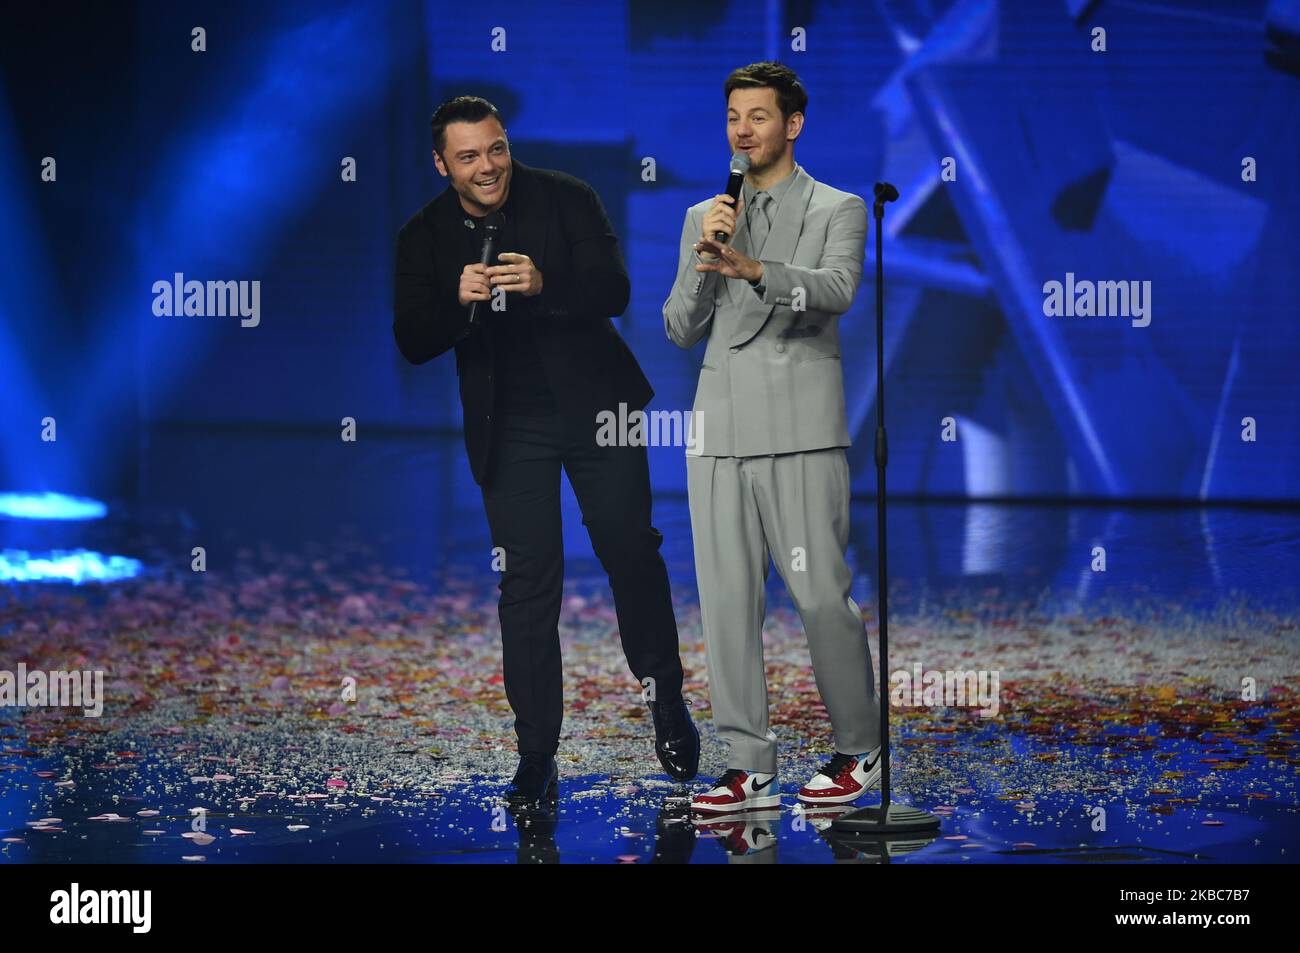 La chanteuse italienne Tiziano Ferro chante lors de l'édition italienne semi-finale du programme international de télévision X Factor, en dôme X Factor, à Monza, en Italie (photo par Andrea Diodato/NurPhoto) Banque D'Images